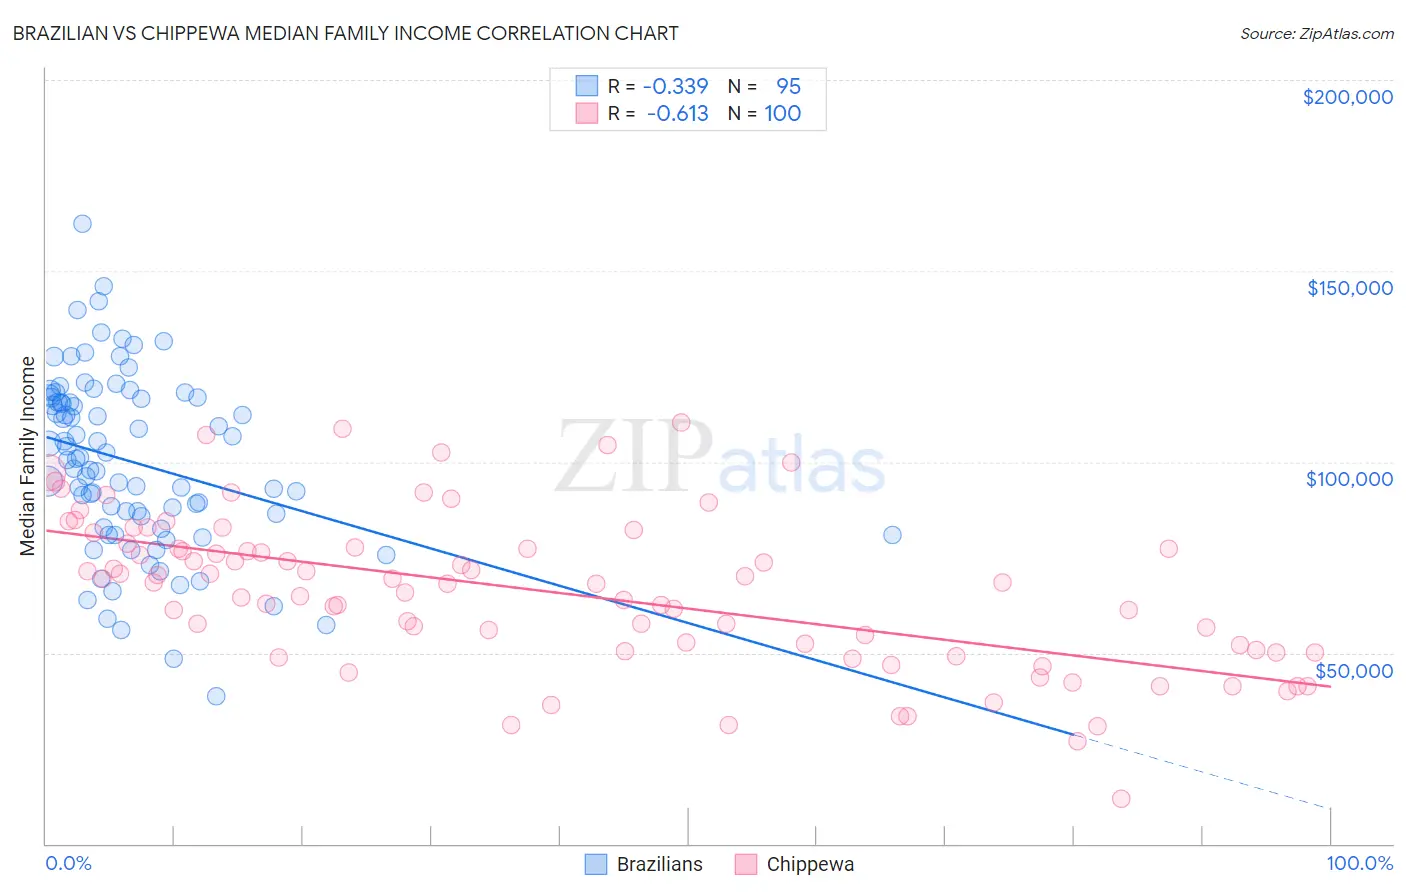 Brazilian vs Chippewa Median Family Income